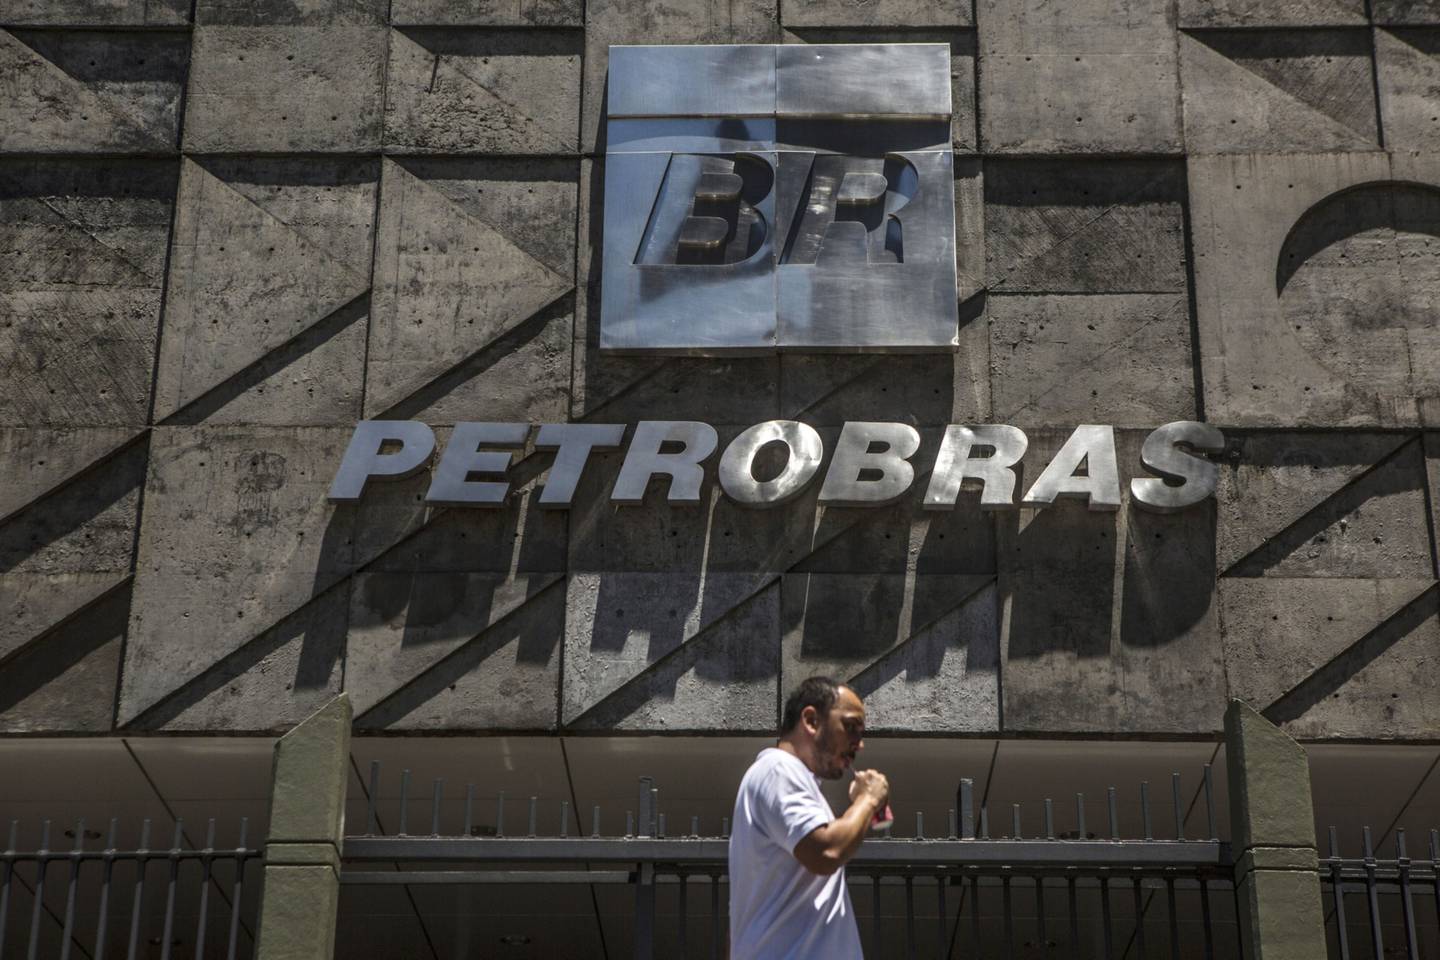 Anúncio de concurso público ocorre no momento em que a Petrobras tem sua política comercial questionada devido aos preços elevados dos combustíveis e impacto negativo na inflação